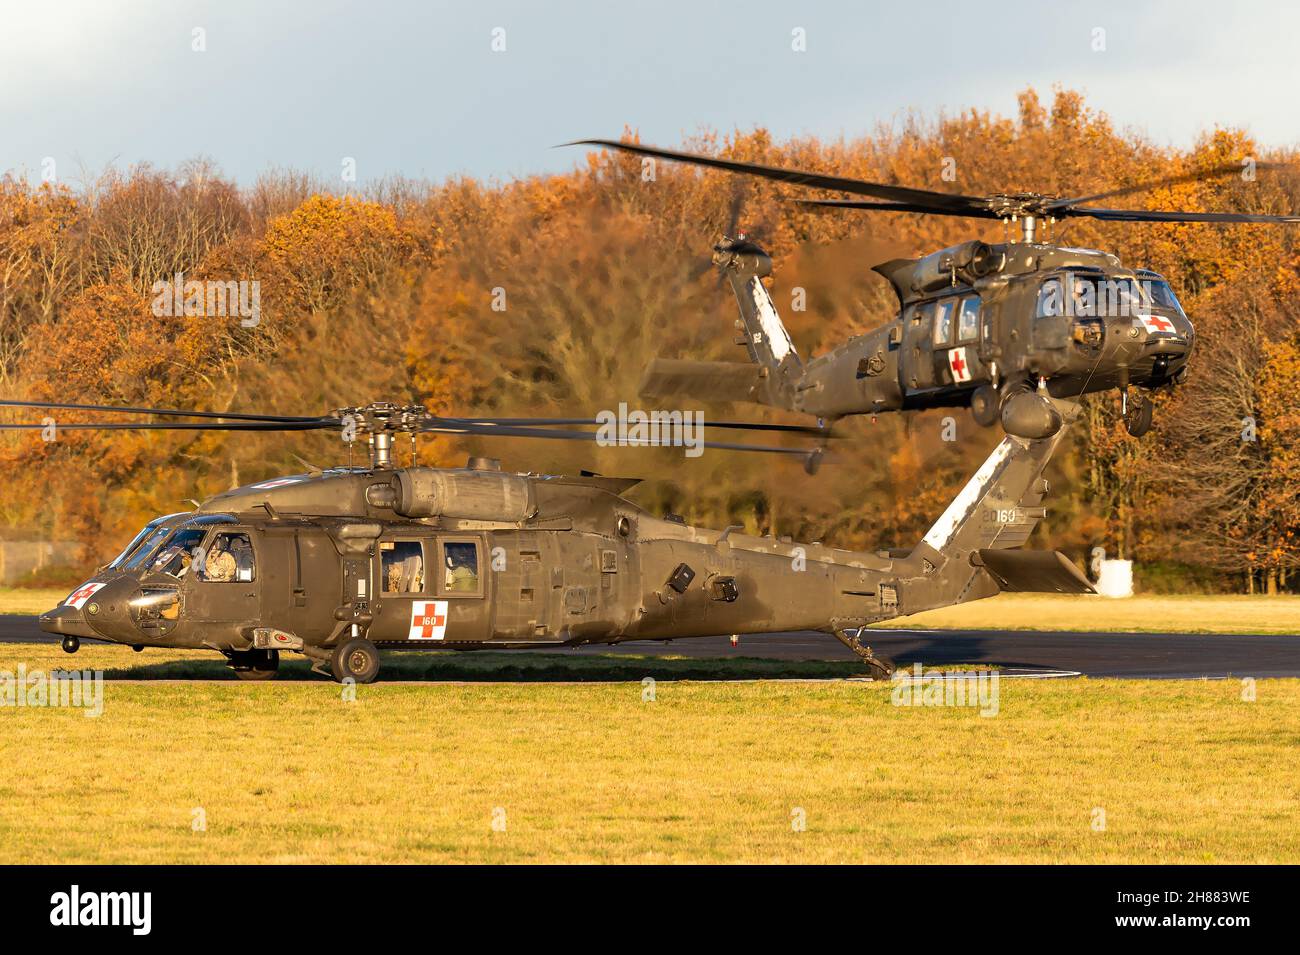 Ein zweimotoriger Utility-Hubschrauber der US-Armee auf dem Luftwaffenstützpunkt Gilze-Rijen, Niederlande, Sikorsky UH-60 Black Hawk. Stockfoto